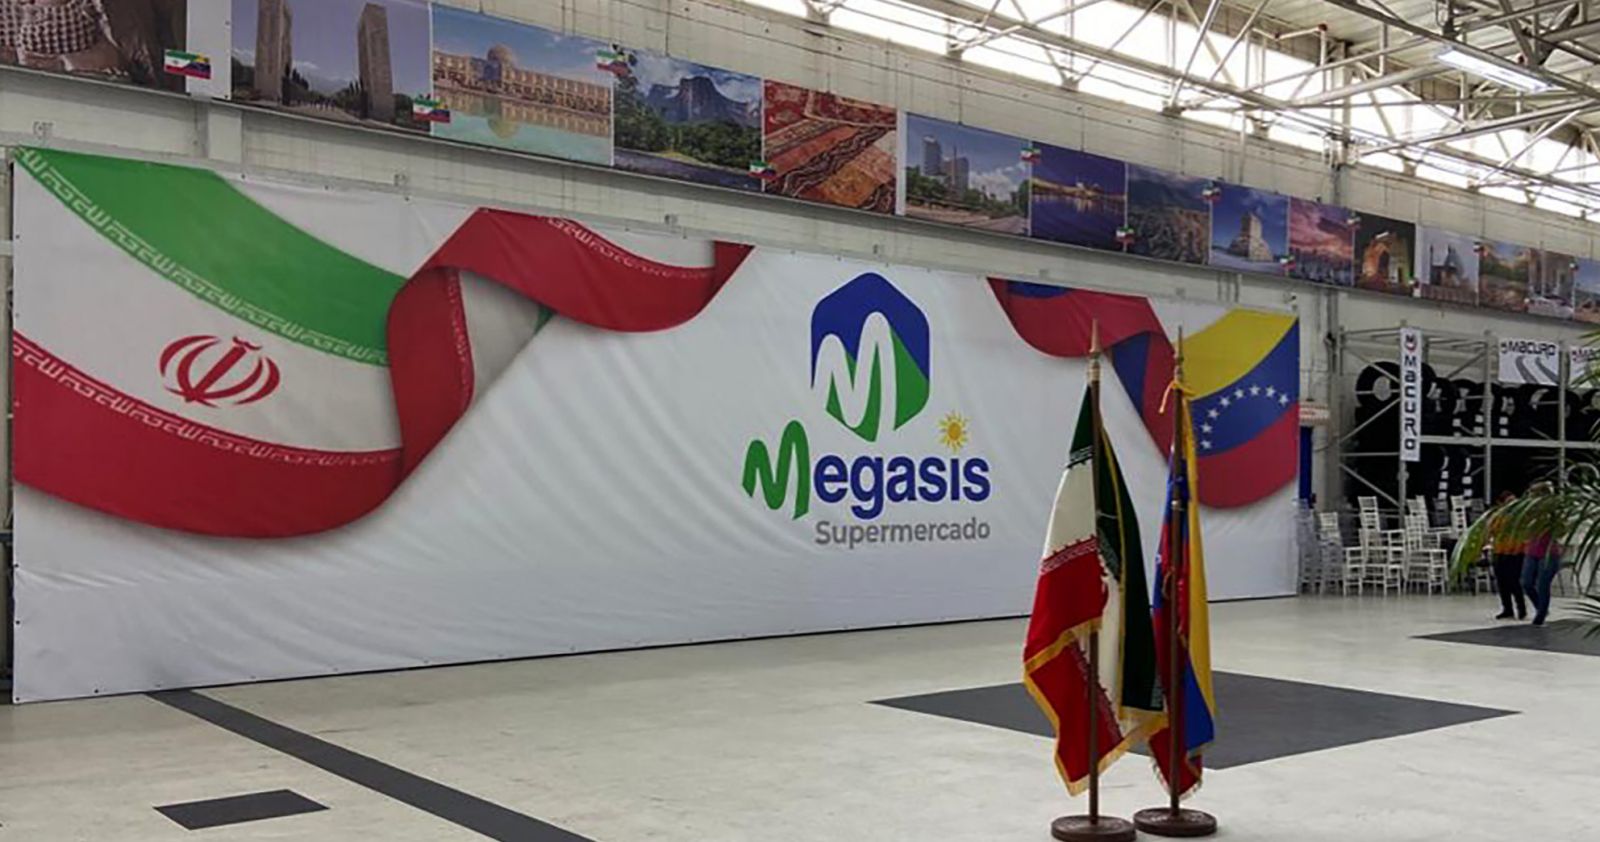 Desafiando a EE.UU., Irán abre su primer supermercado en Venezuela, Megasis 